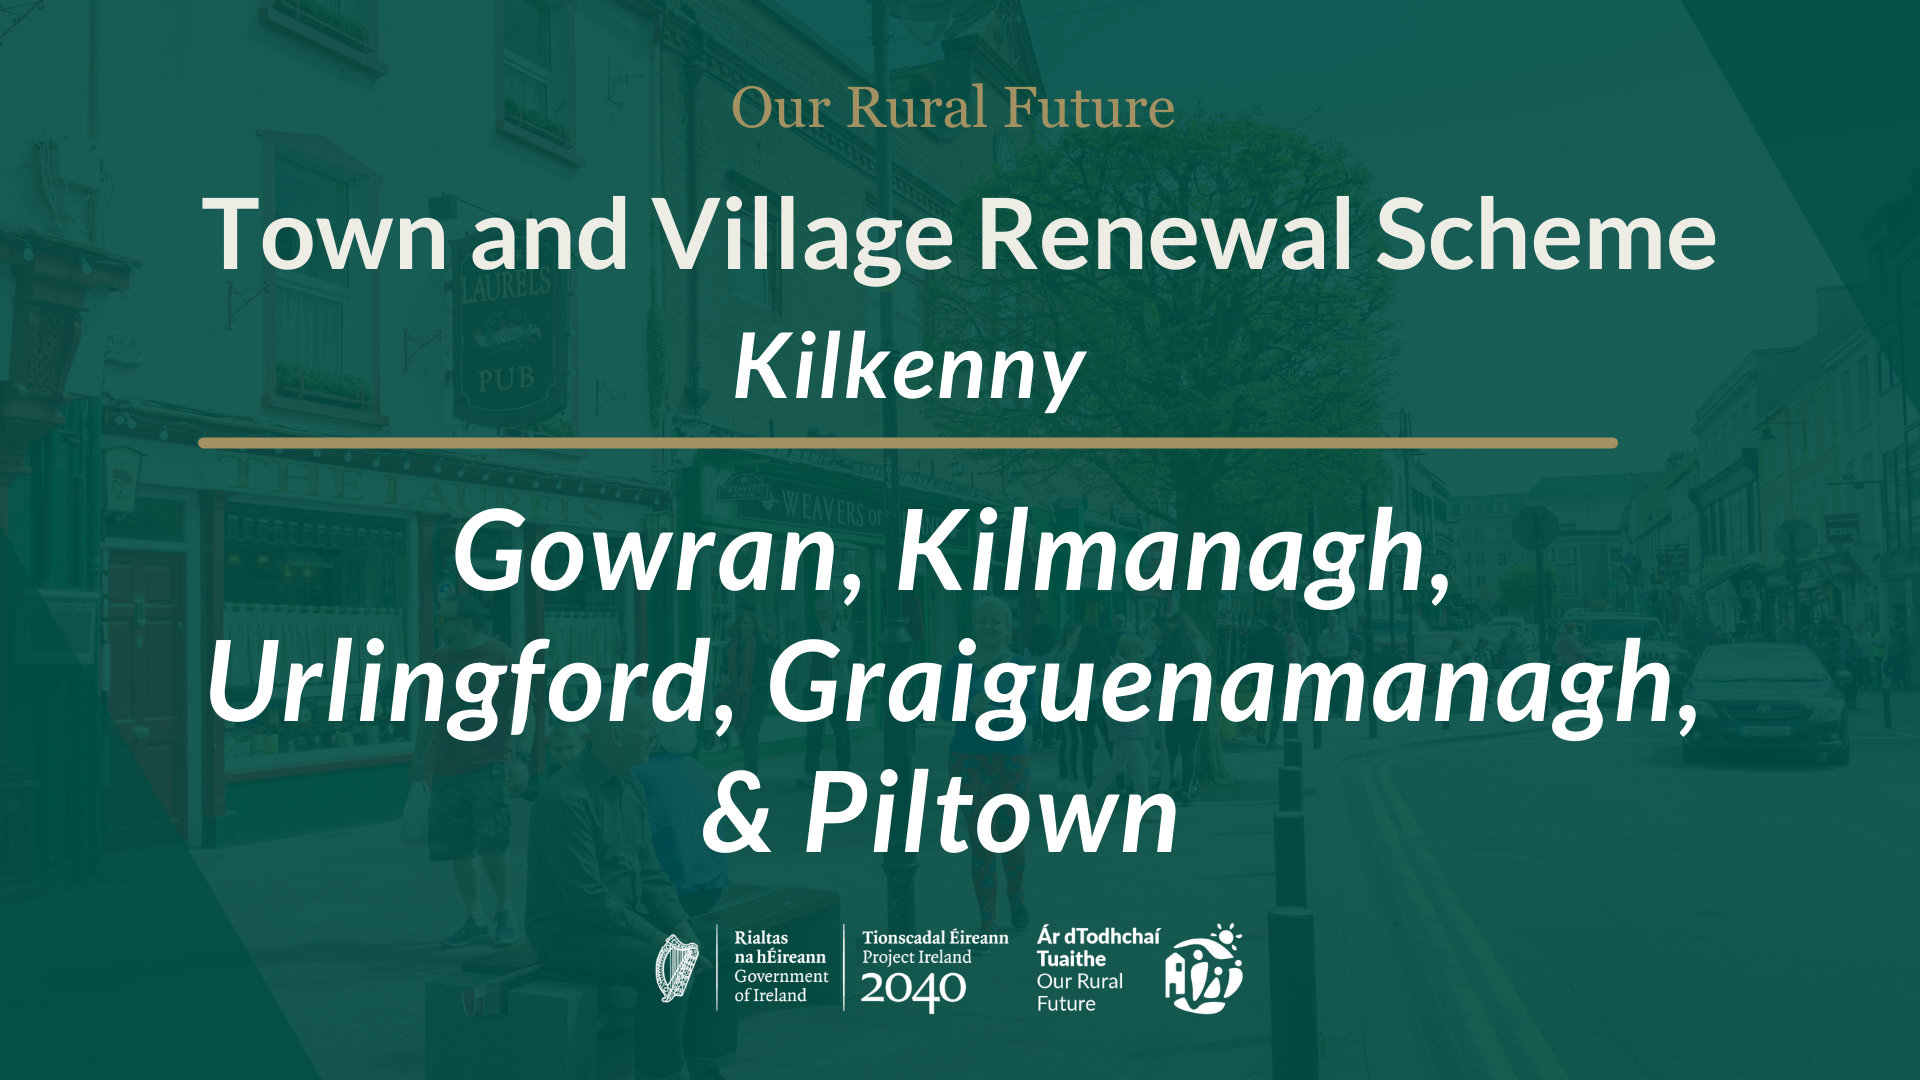 Kilkenny---Program-odnowy-miasta-i-wioski---Kopiowanie-obrazu